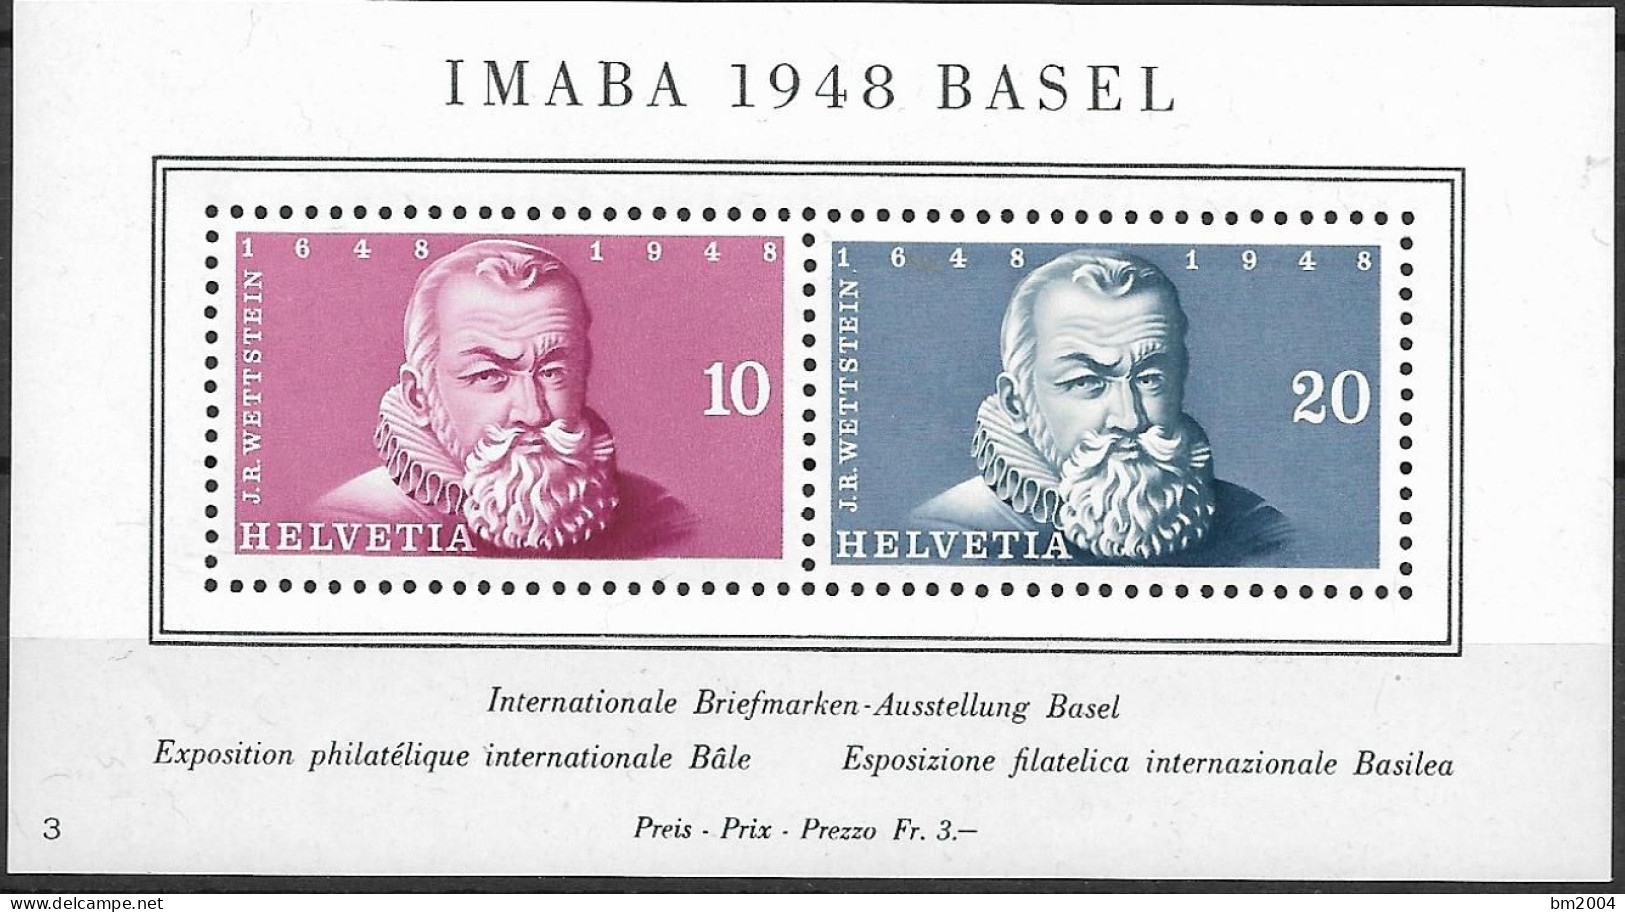 1948 Schweiz Mi. Bl. 13**MNH Internationale Briefmarkenausstellung IMABA 1948, Basel. - Ongebruikt